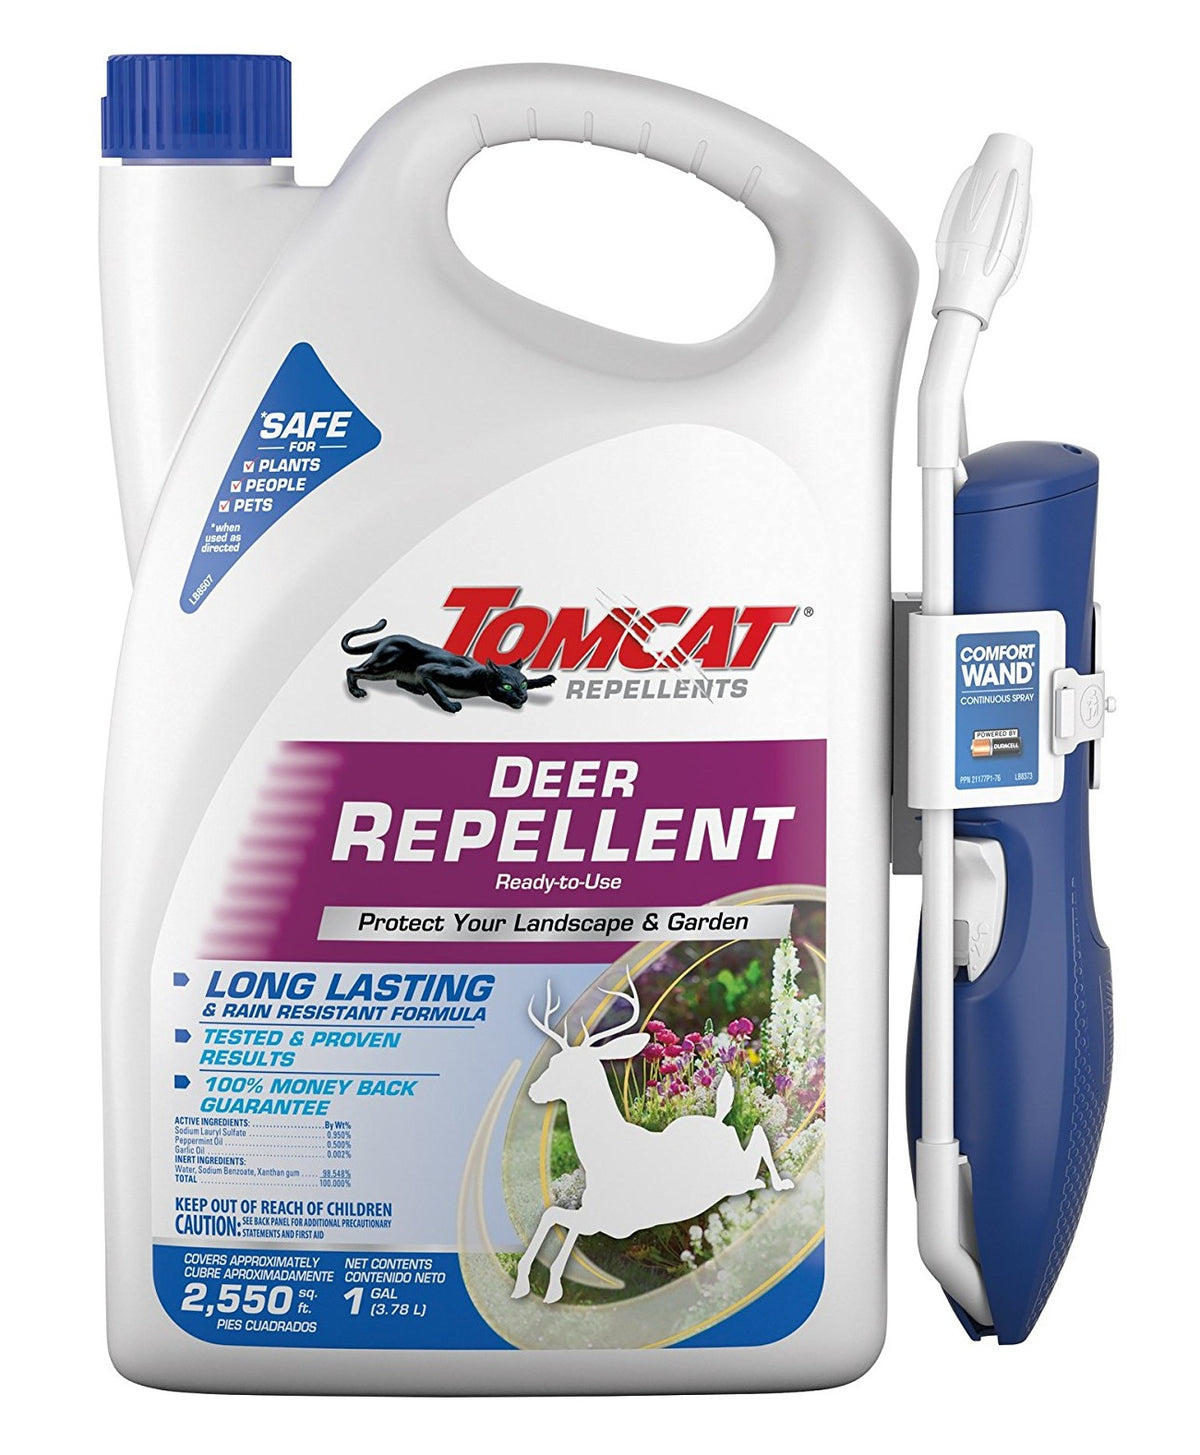 Tomcat 0491110 Deer Animal Repellent, 1 Gallon